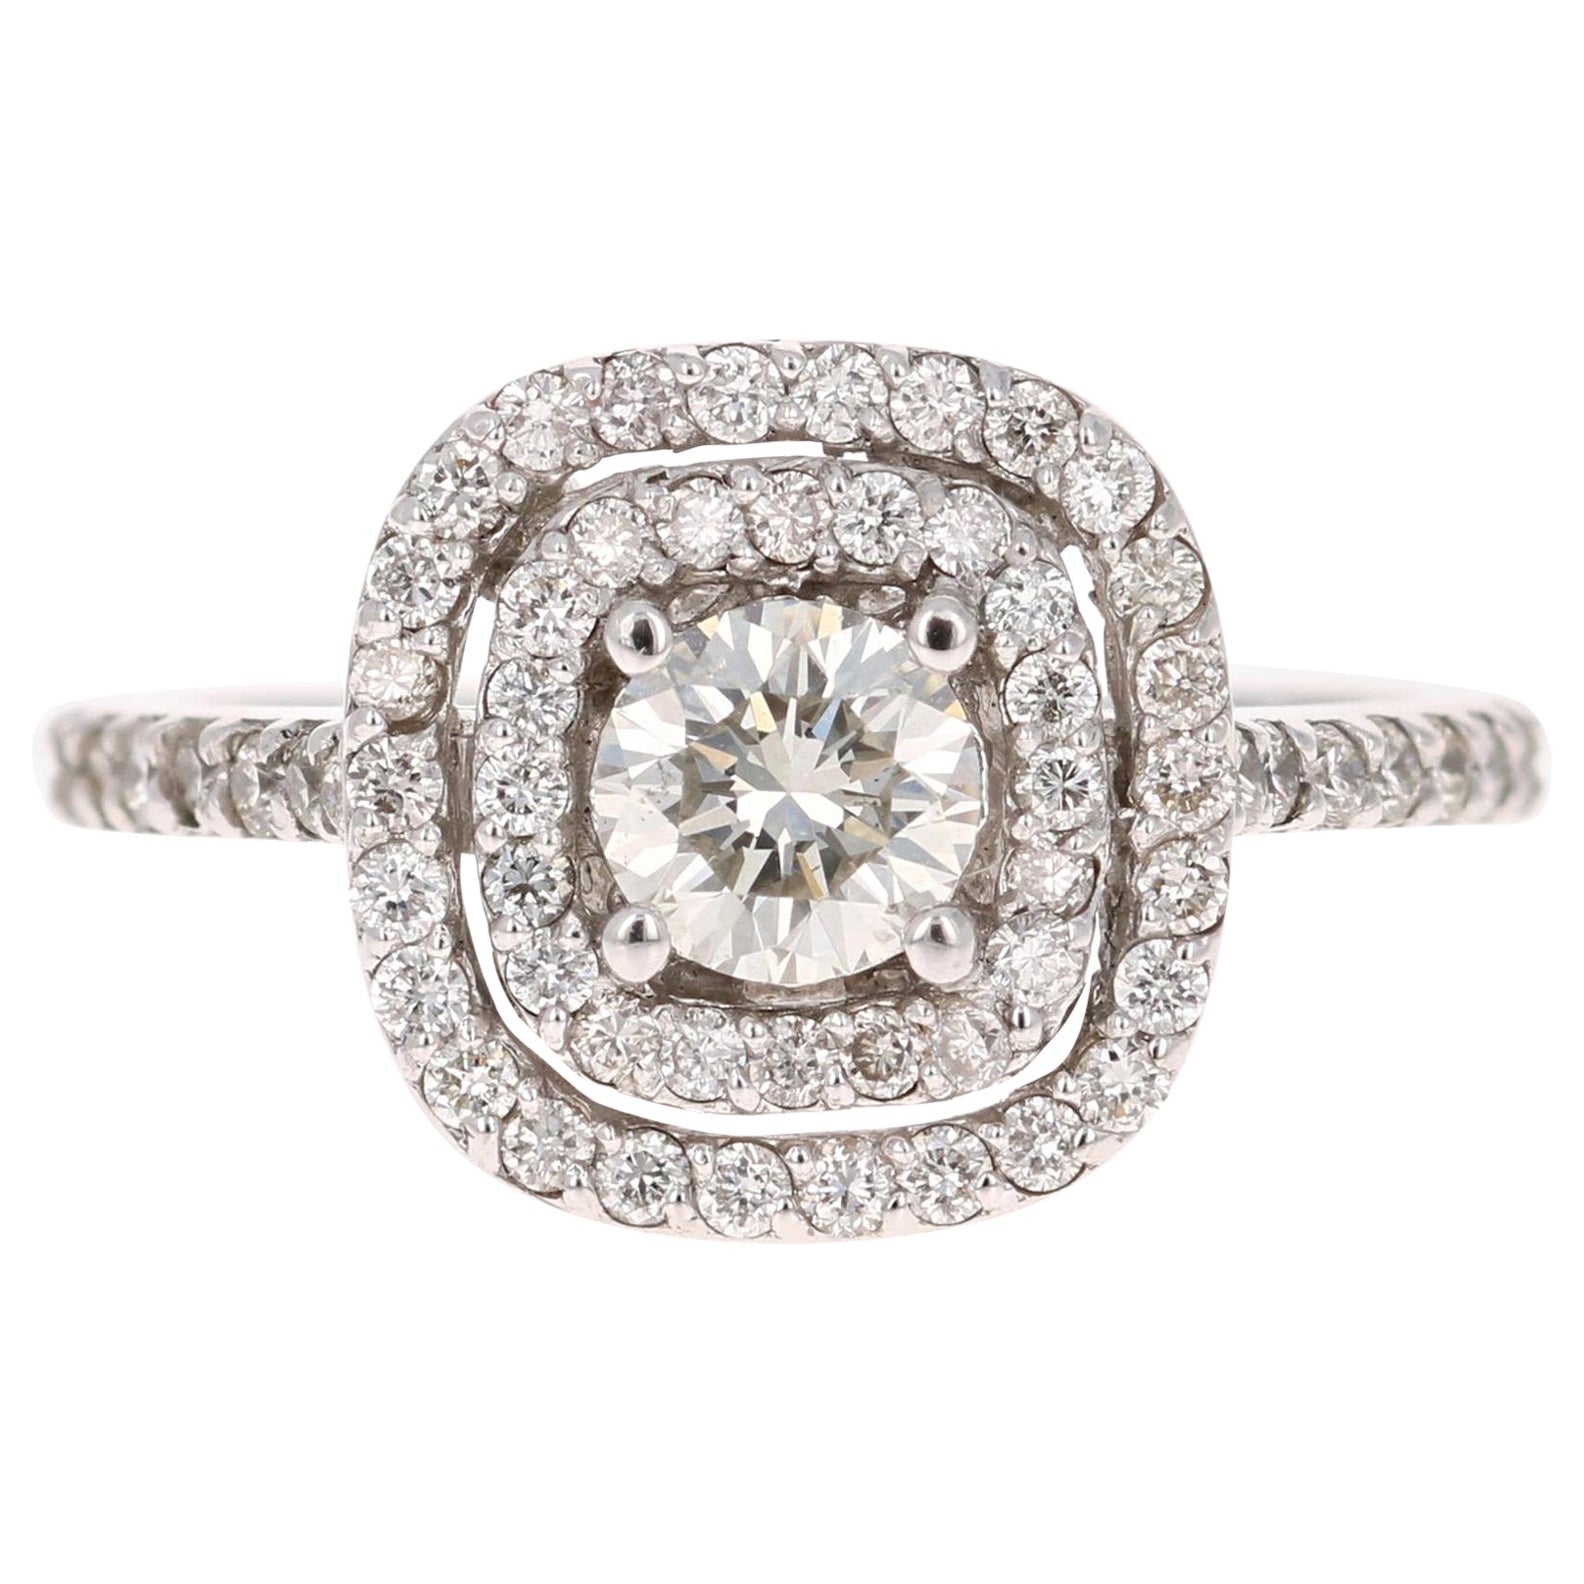 1.02 Carat Diamond White Gold Engagement Ring